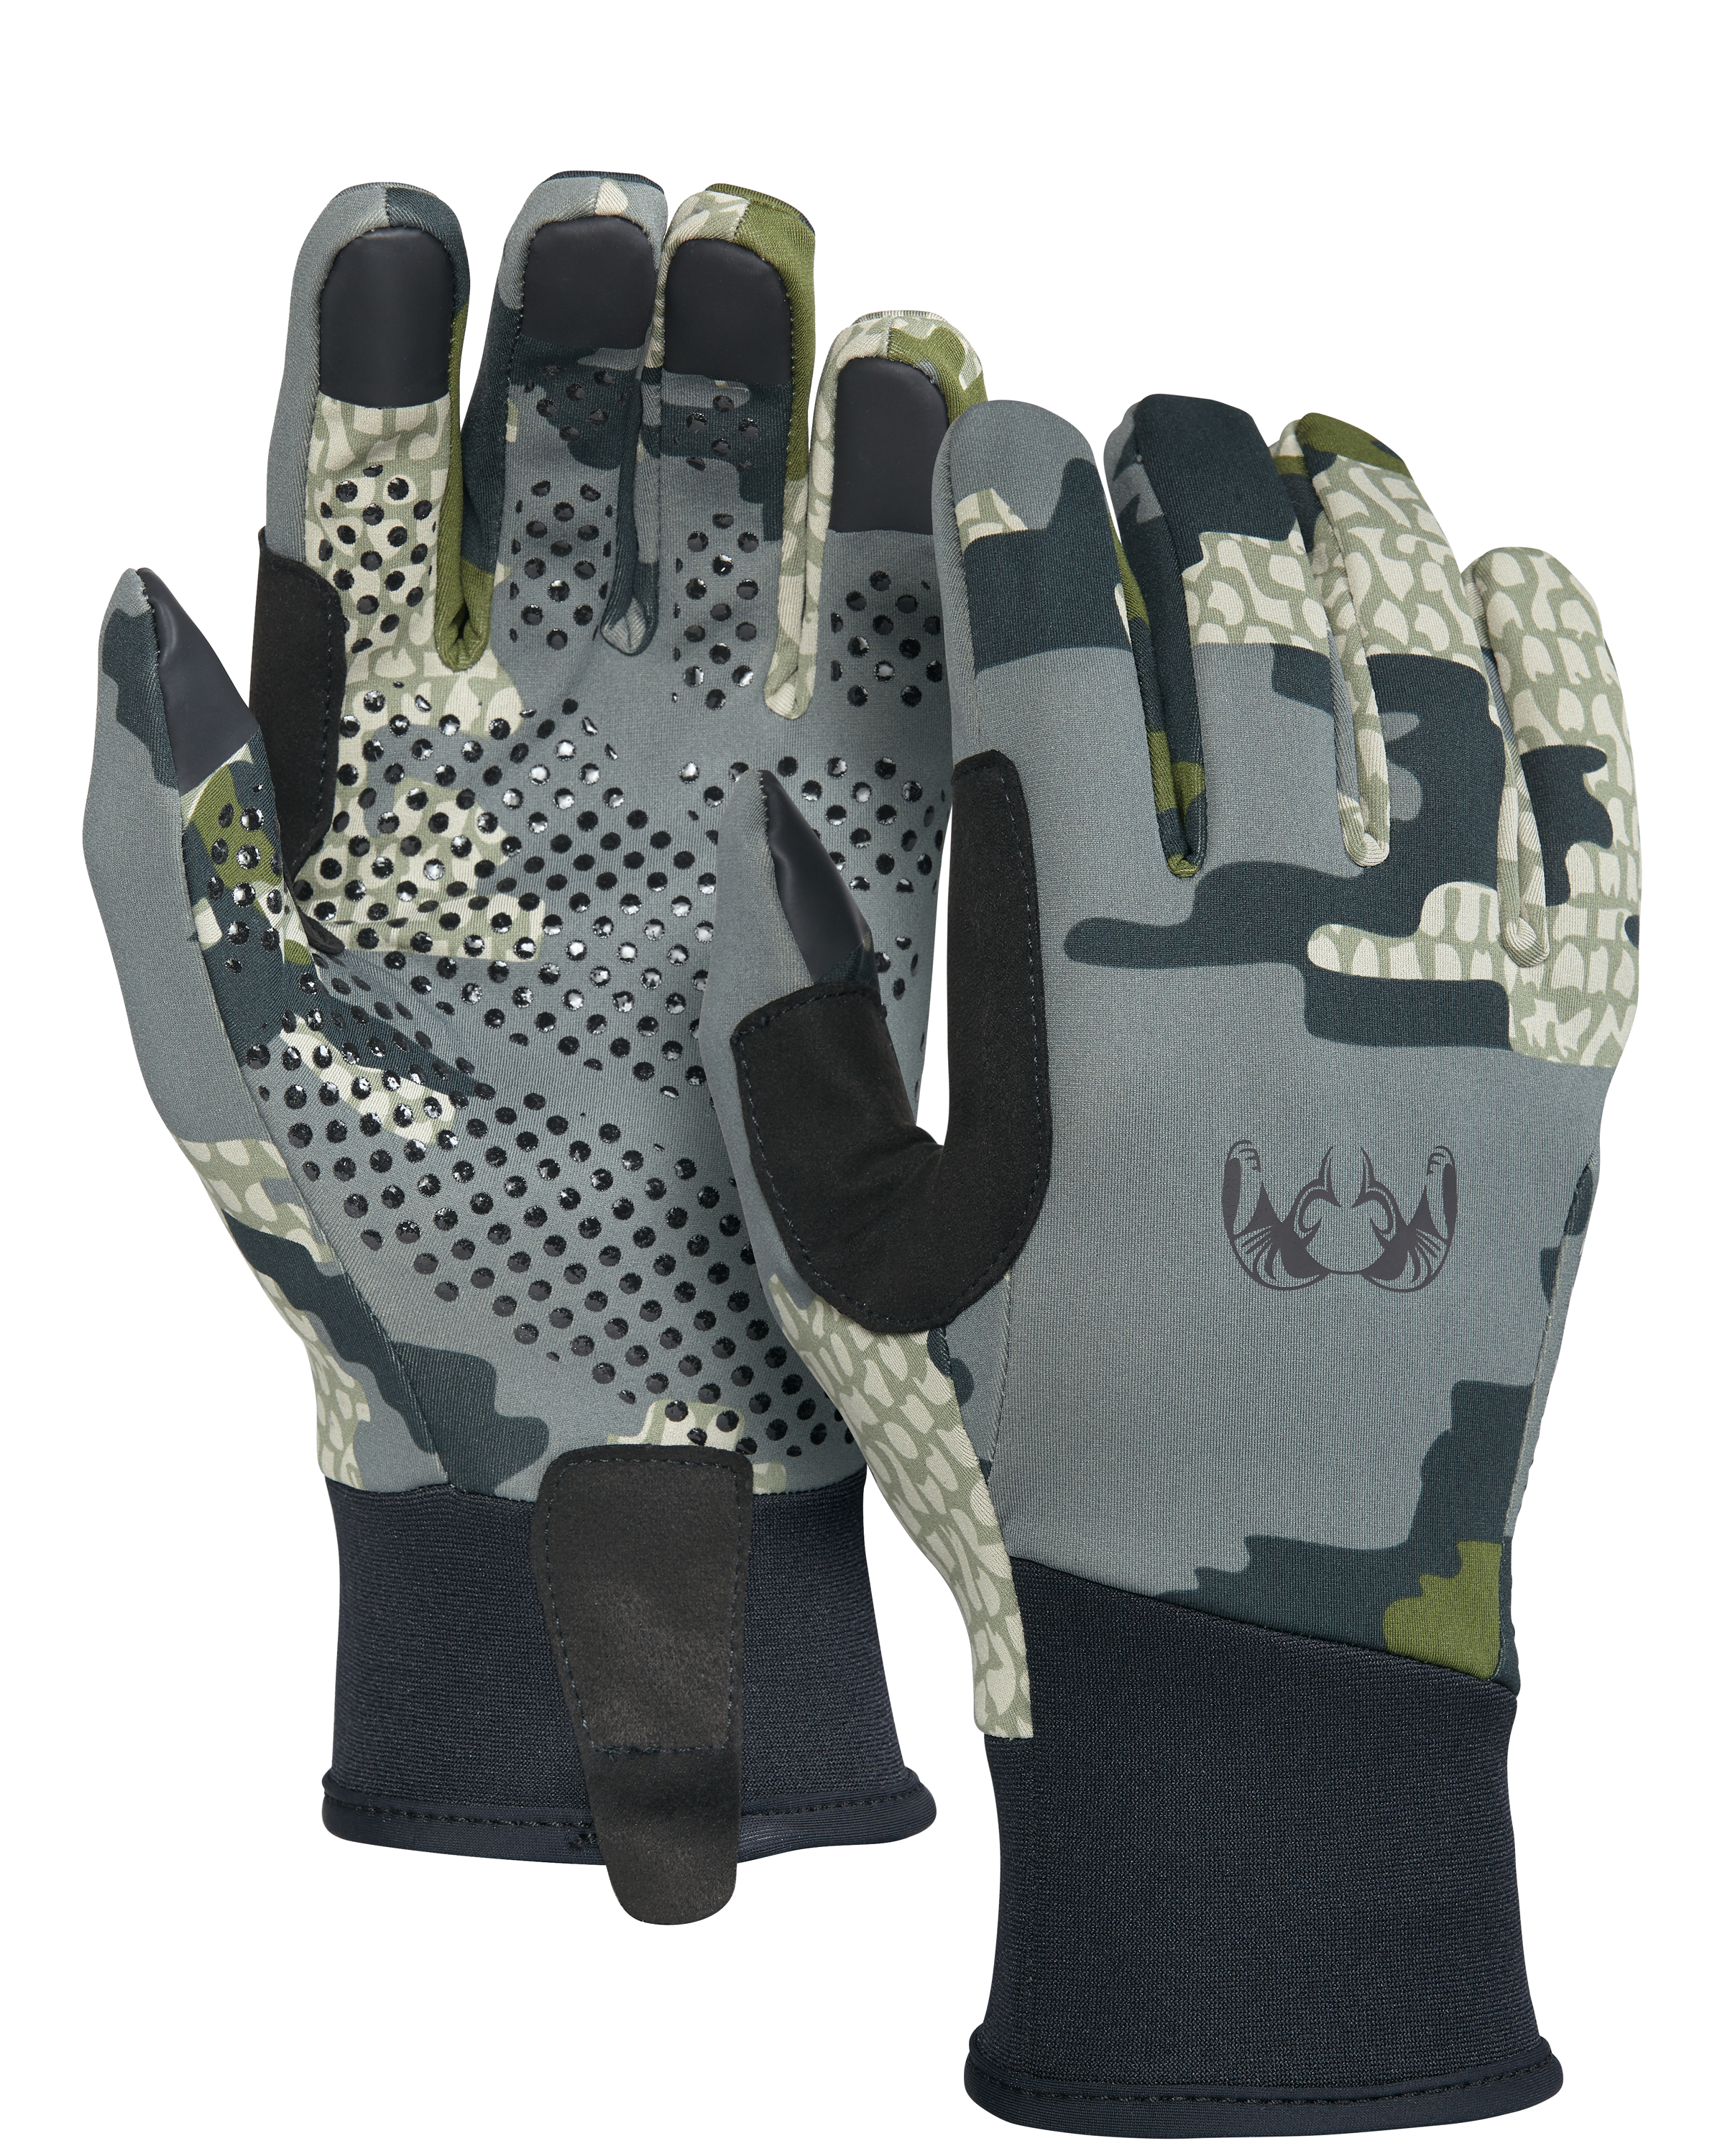 KUIU Axis Hunting Glove in Verde | Size Medium